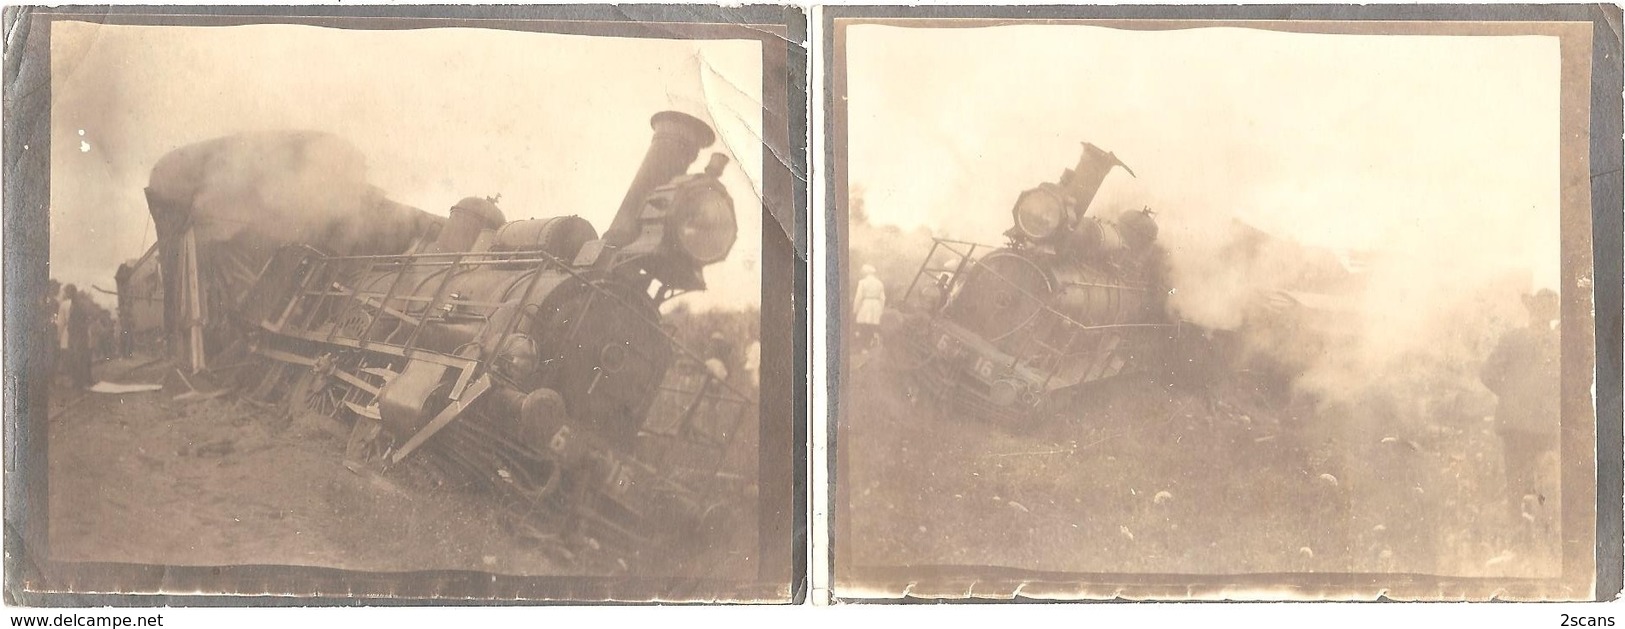 RUSSIE - Lot De 2 Photographies Anciennes (9 X 12 Cm) - ACCIDENT DE TRAIN - Locomotive 6. 16 (vers 1900) - Photo - Russland